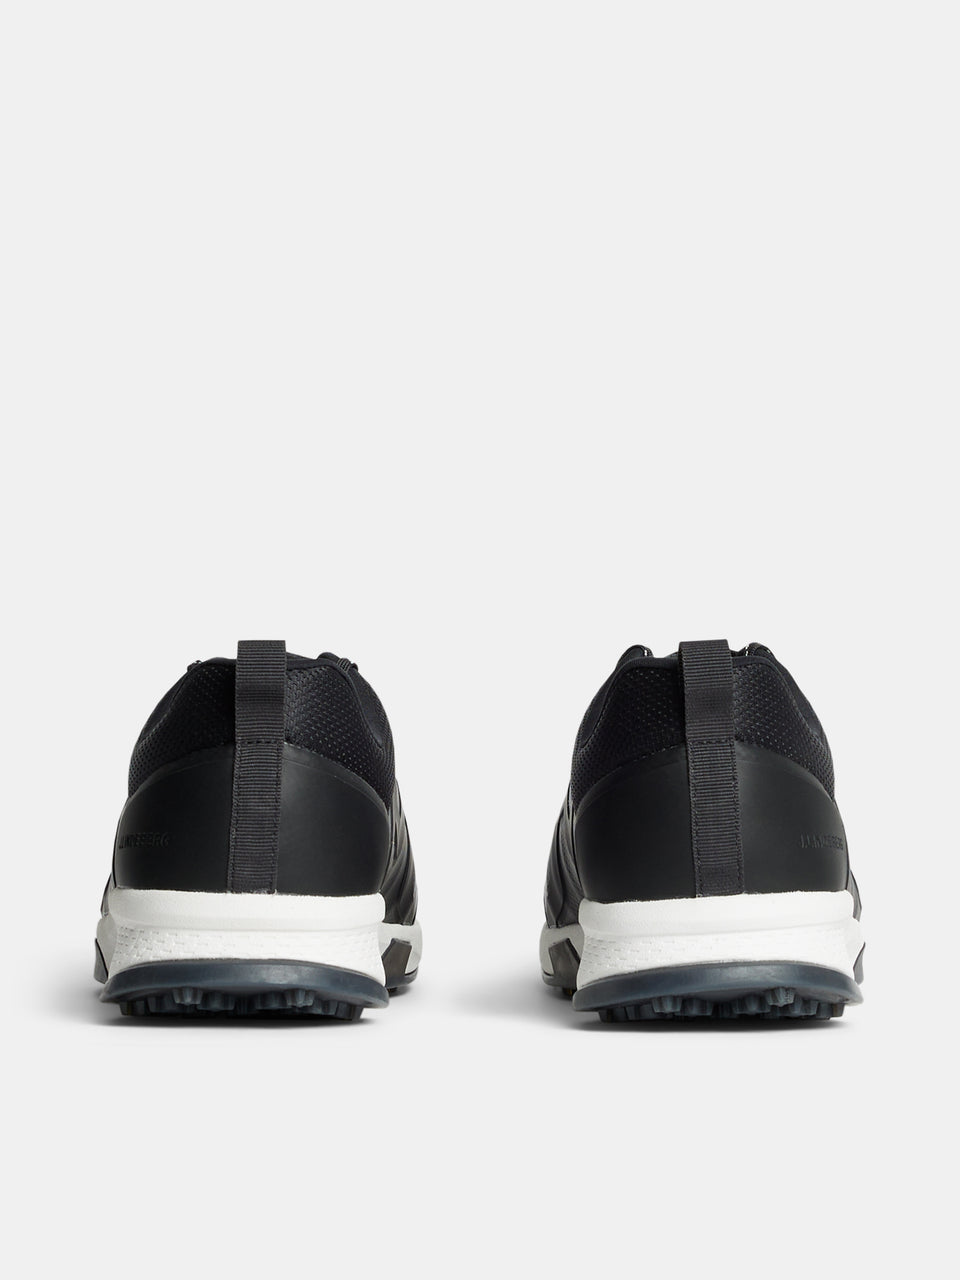 Range Finder Golf Sneaker / Black